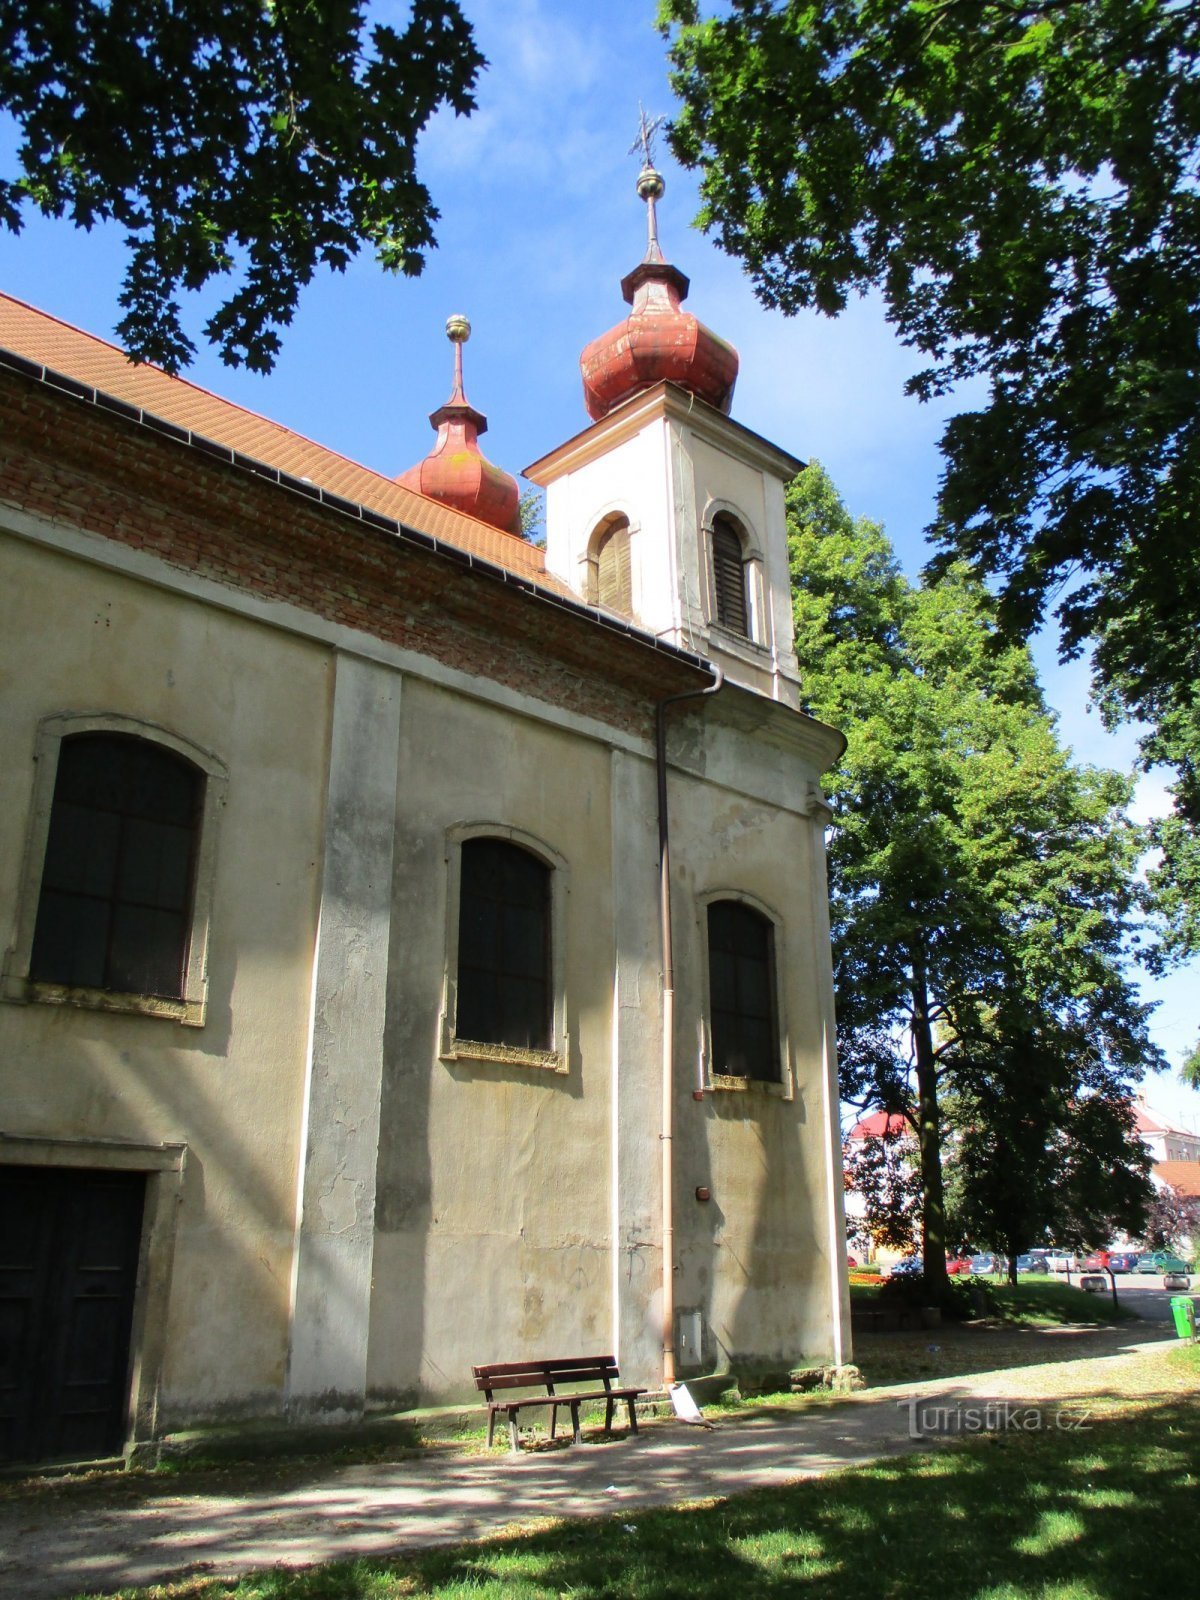 Iglesia de la Santísima Trinidad (Nový Bydžov, 5.7.2020 de julio de XNUMX)